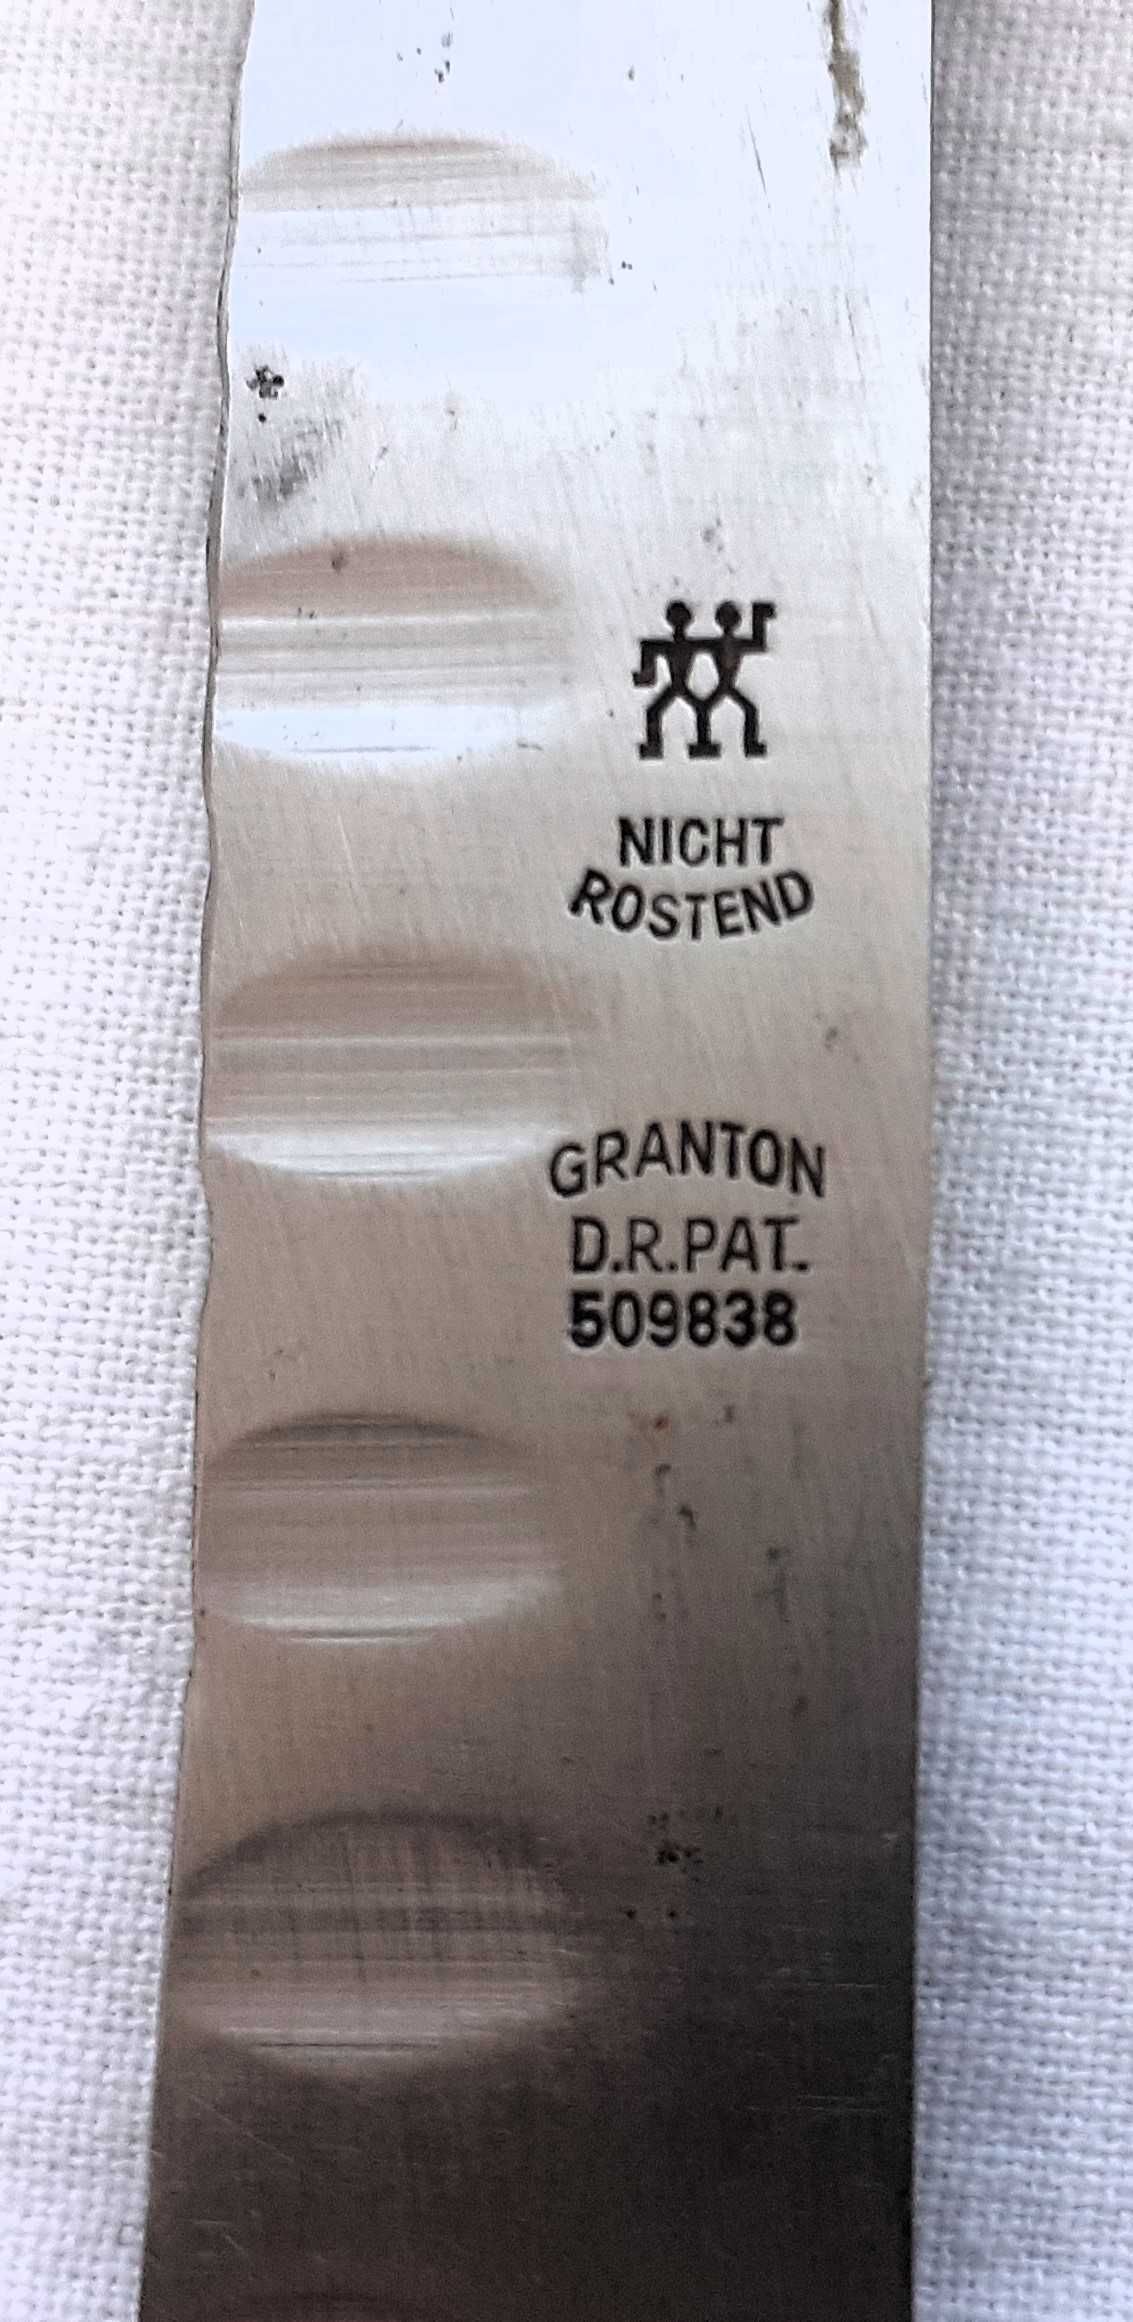 Kolekcjonerski nóż z patentem